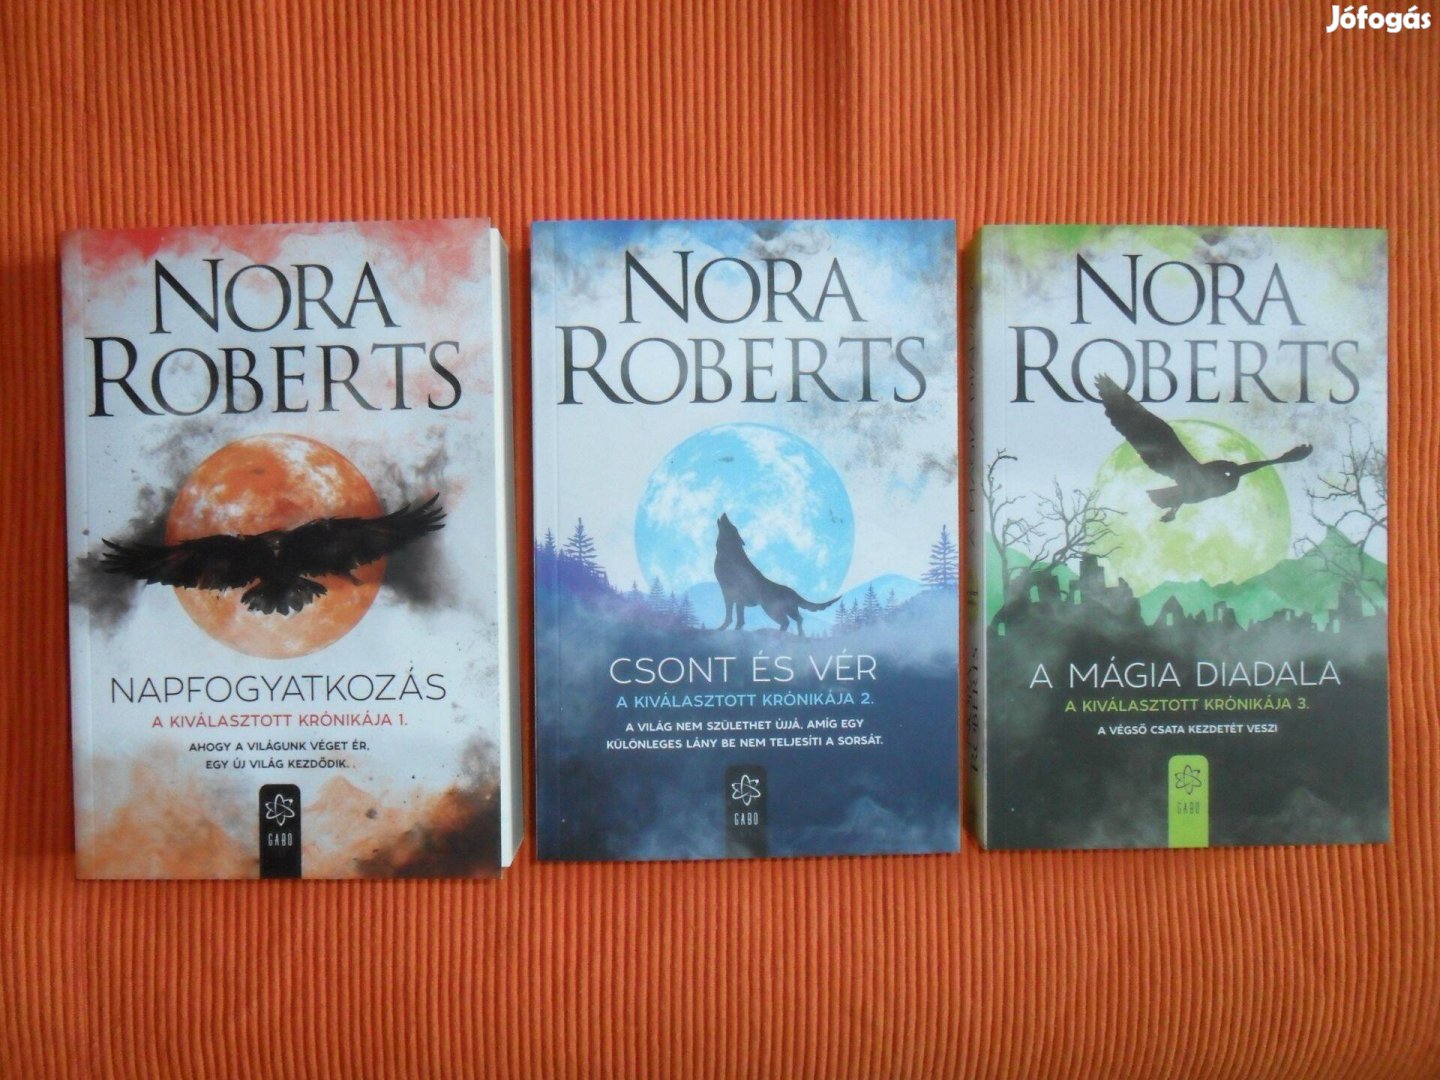 Nora Roberts: A Kiválasztott krónikája 1-3